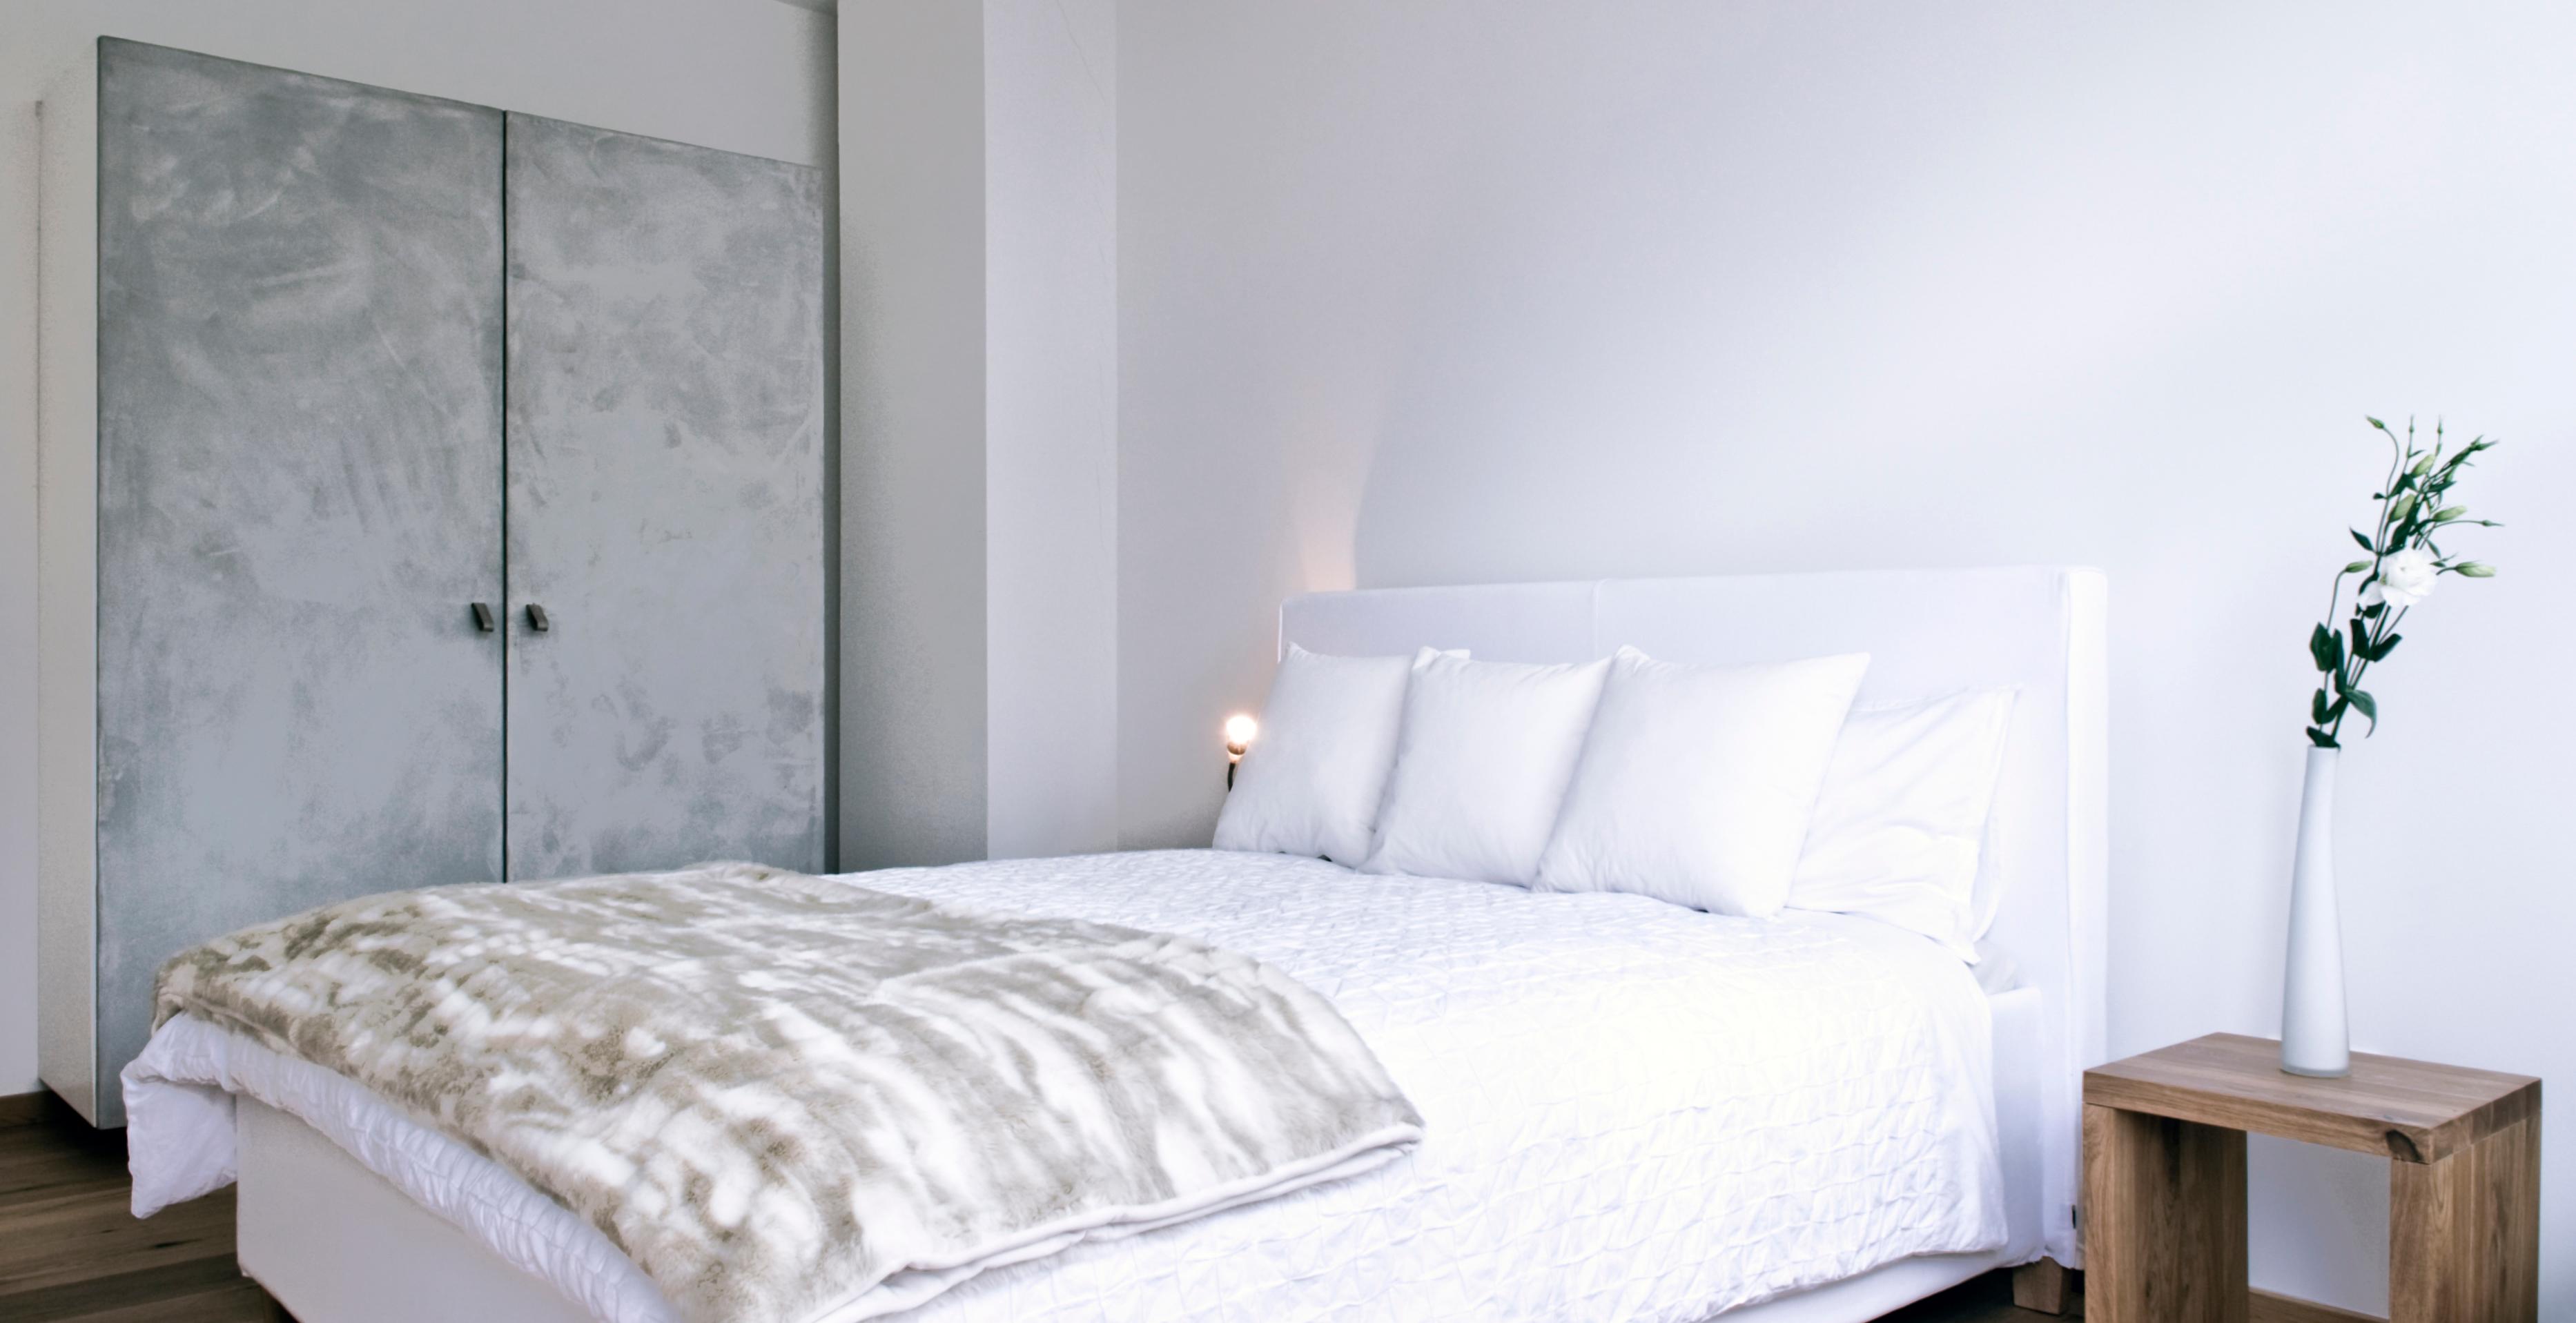 Elegantes Schlafzimmer in Weiß #nachttisch ©Michael Pfeiffer Fotografie